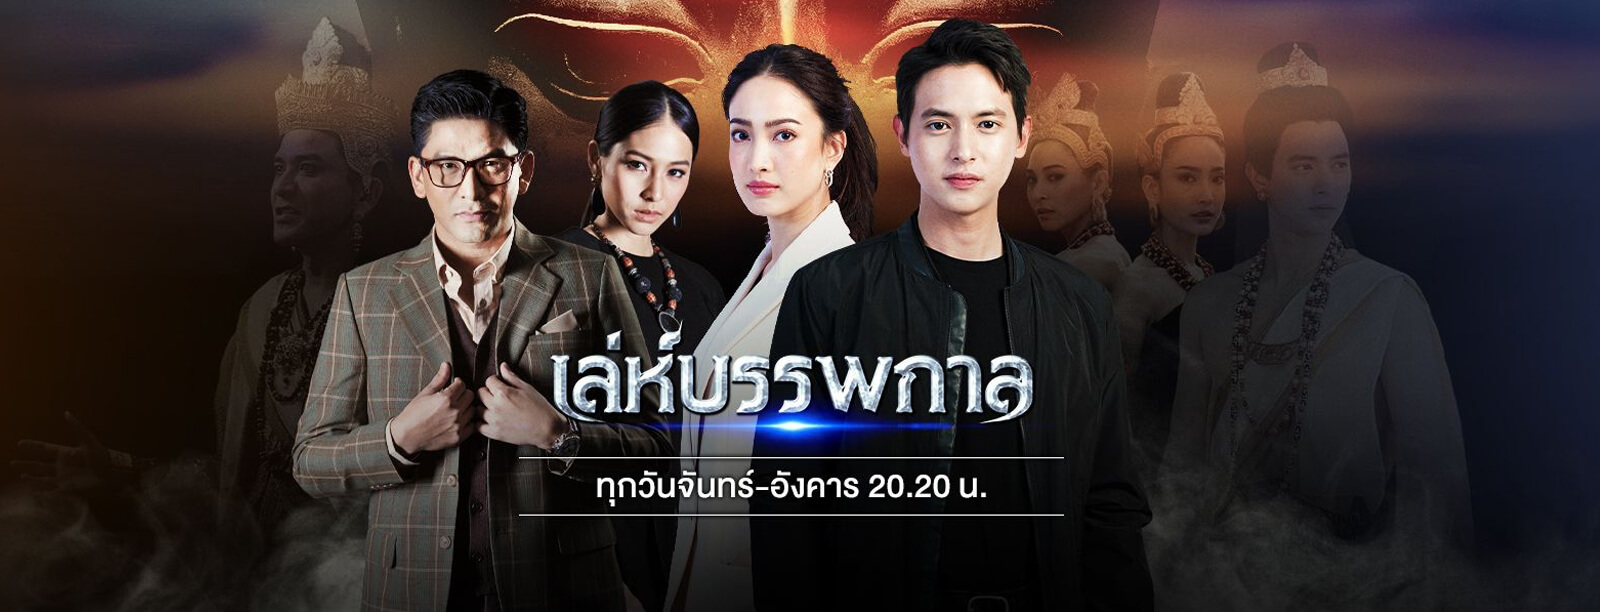 SeeSanTV Thai TV TV Thailand Thai Lakorn 